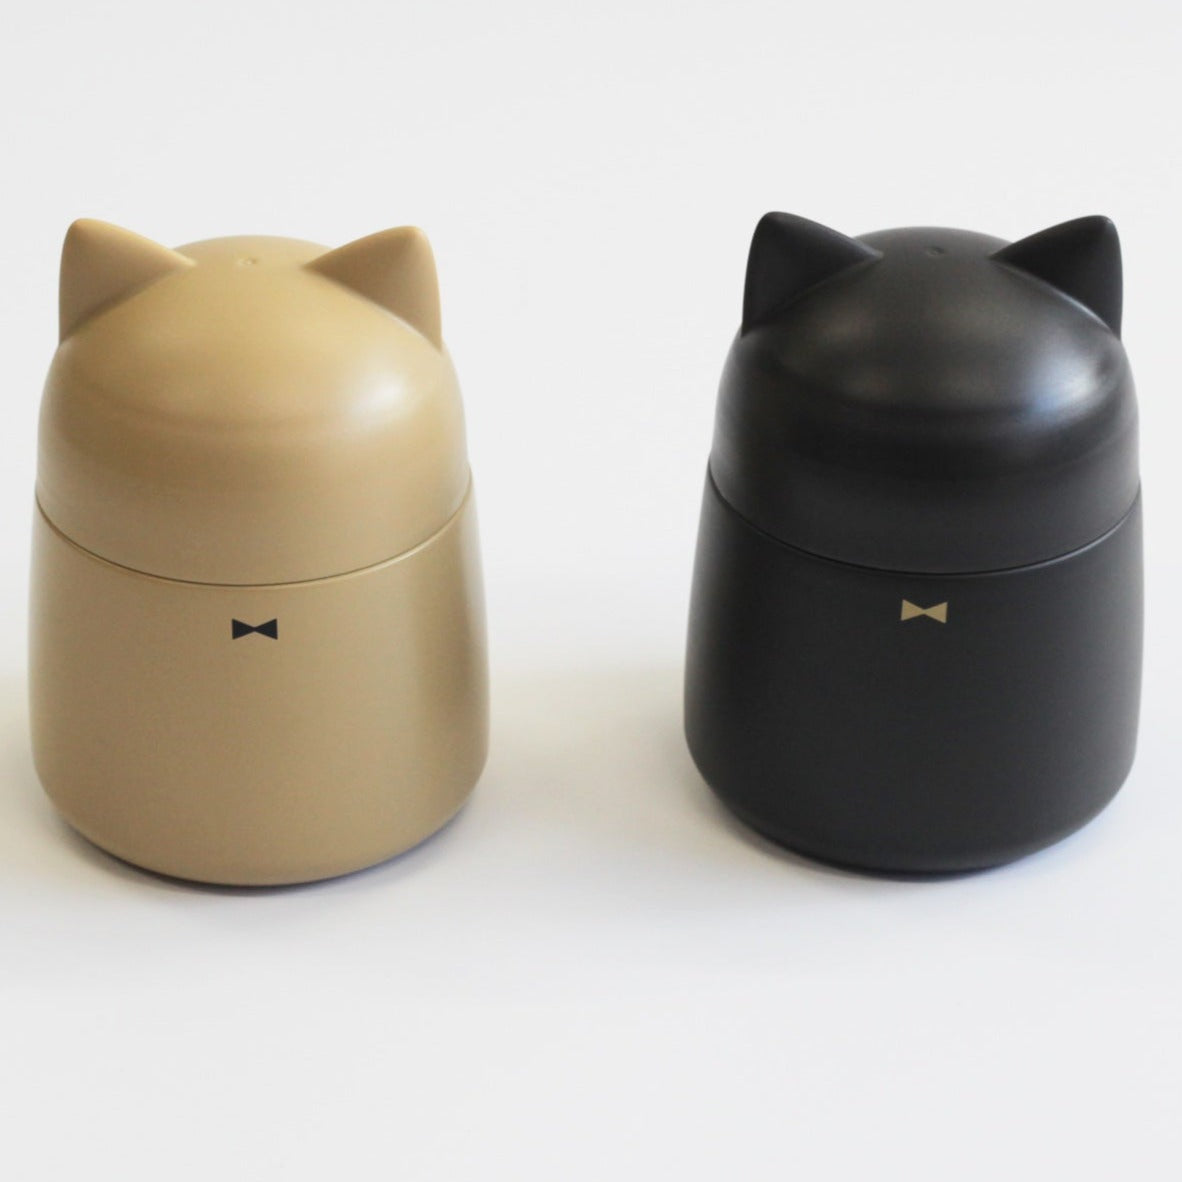 Cat Ears Stainless Soup Jar | Beige